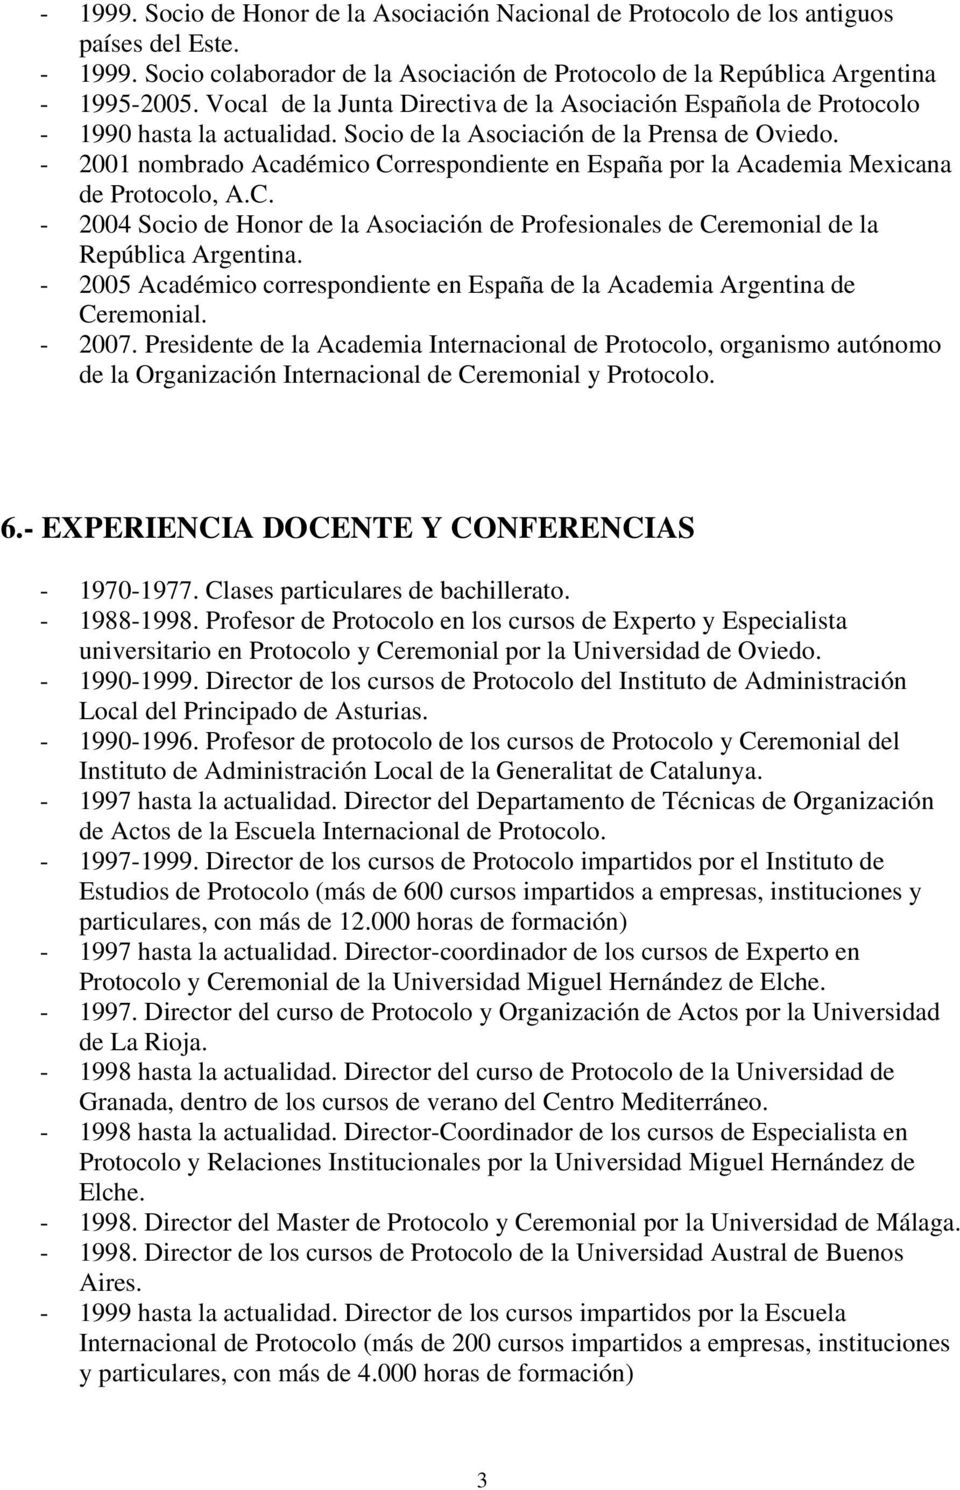 - 2001 nombrado Académico Correspondiente en España por la Academia Mexicana de Protocolo, A.C. - 2004 Socio de Honor de la Asociación de Profesionales de Ceremonial de la República Argentina.